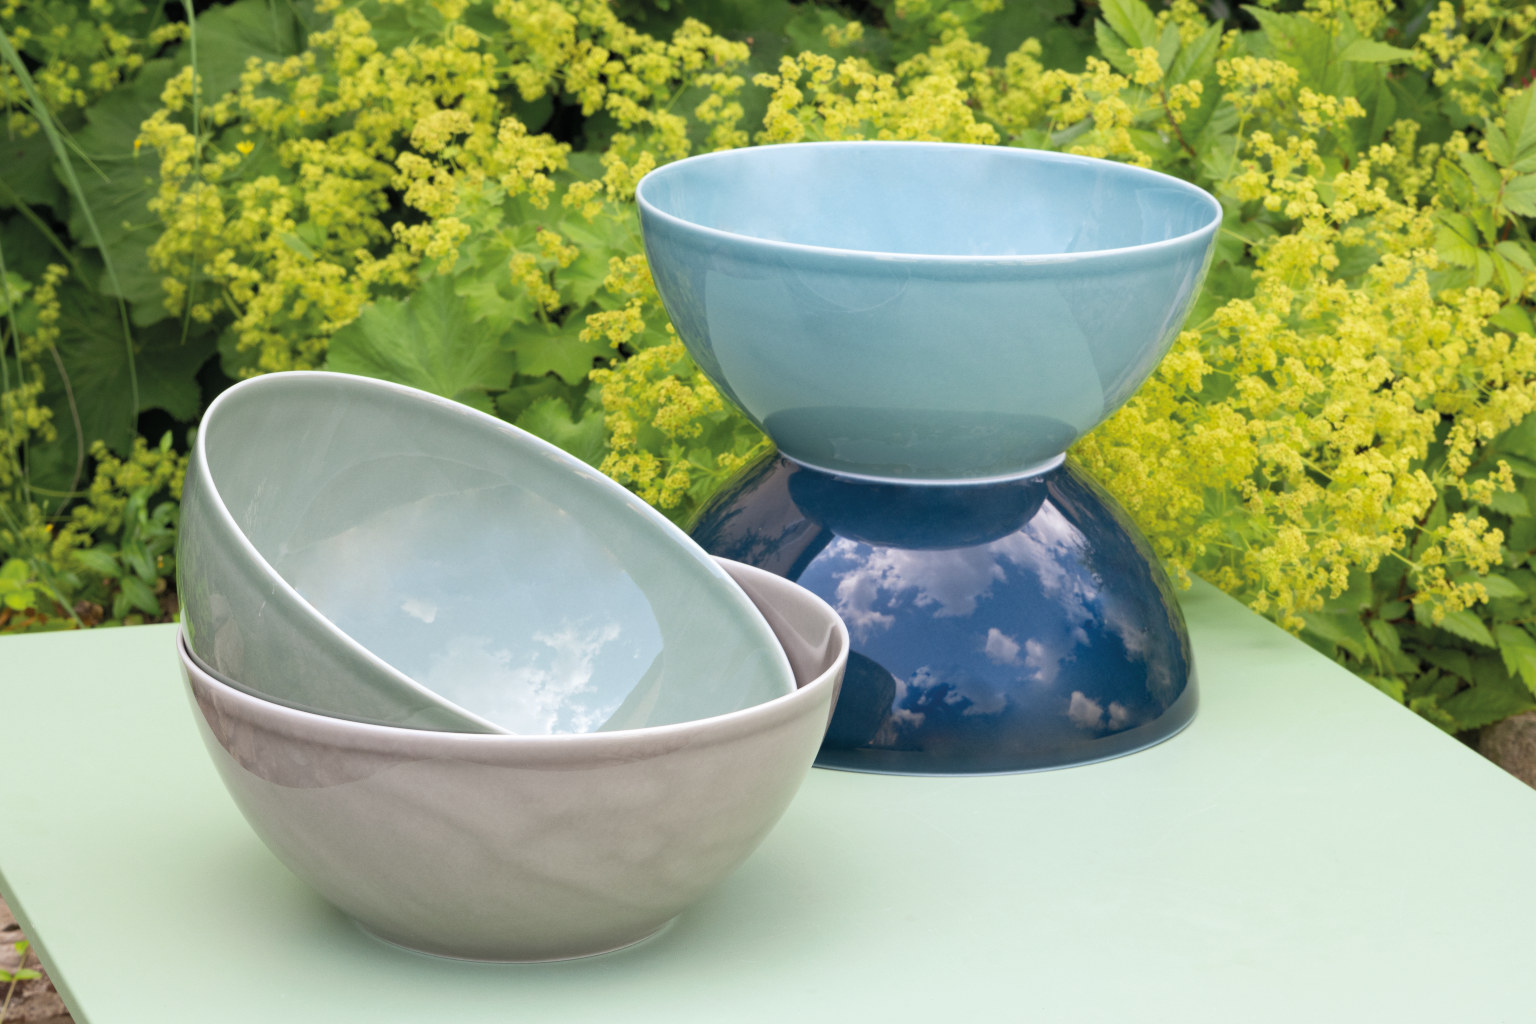 Thomas Daily Bowls in vier Pastelfarben gestapelt auf einem Gartentisch